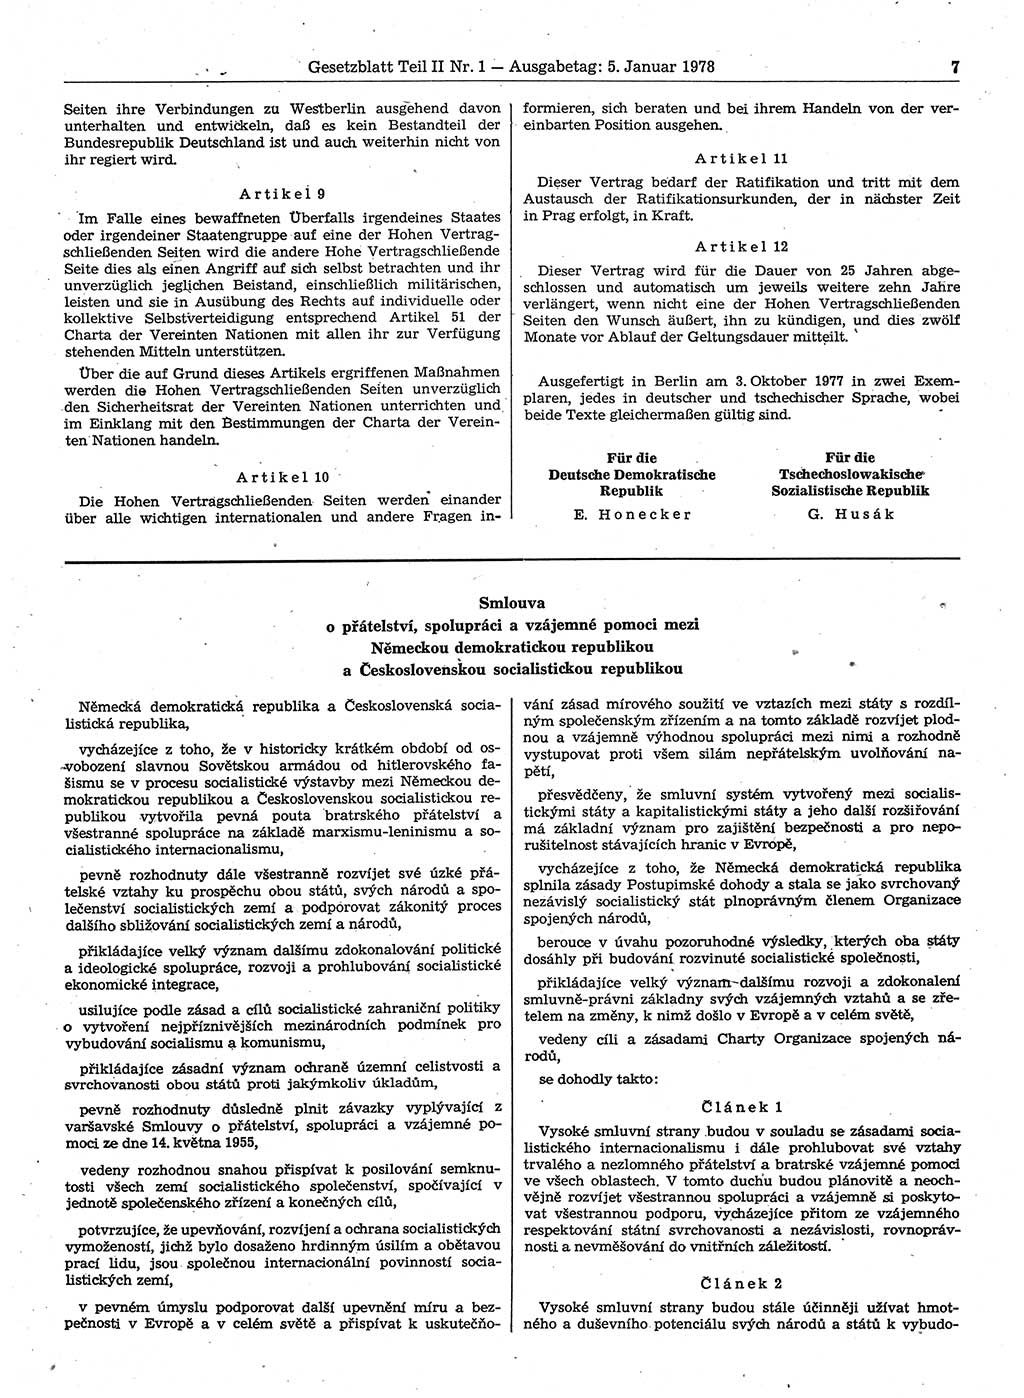 Gesetzblatt (GBl.) der Deutschen Demokratischen Republik (DDR) Teil ⅠⅠ 1978, Seite 7 (GBl. DDR ⅠⅠ 1978, S. 7)